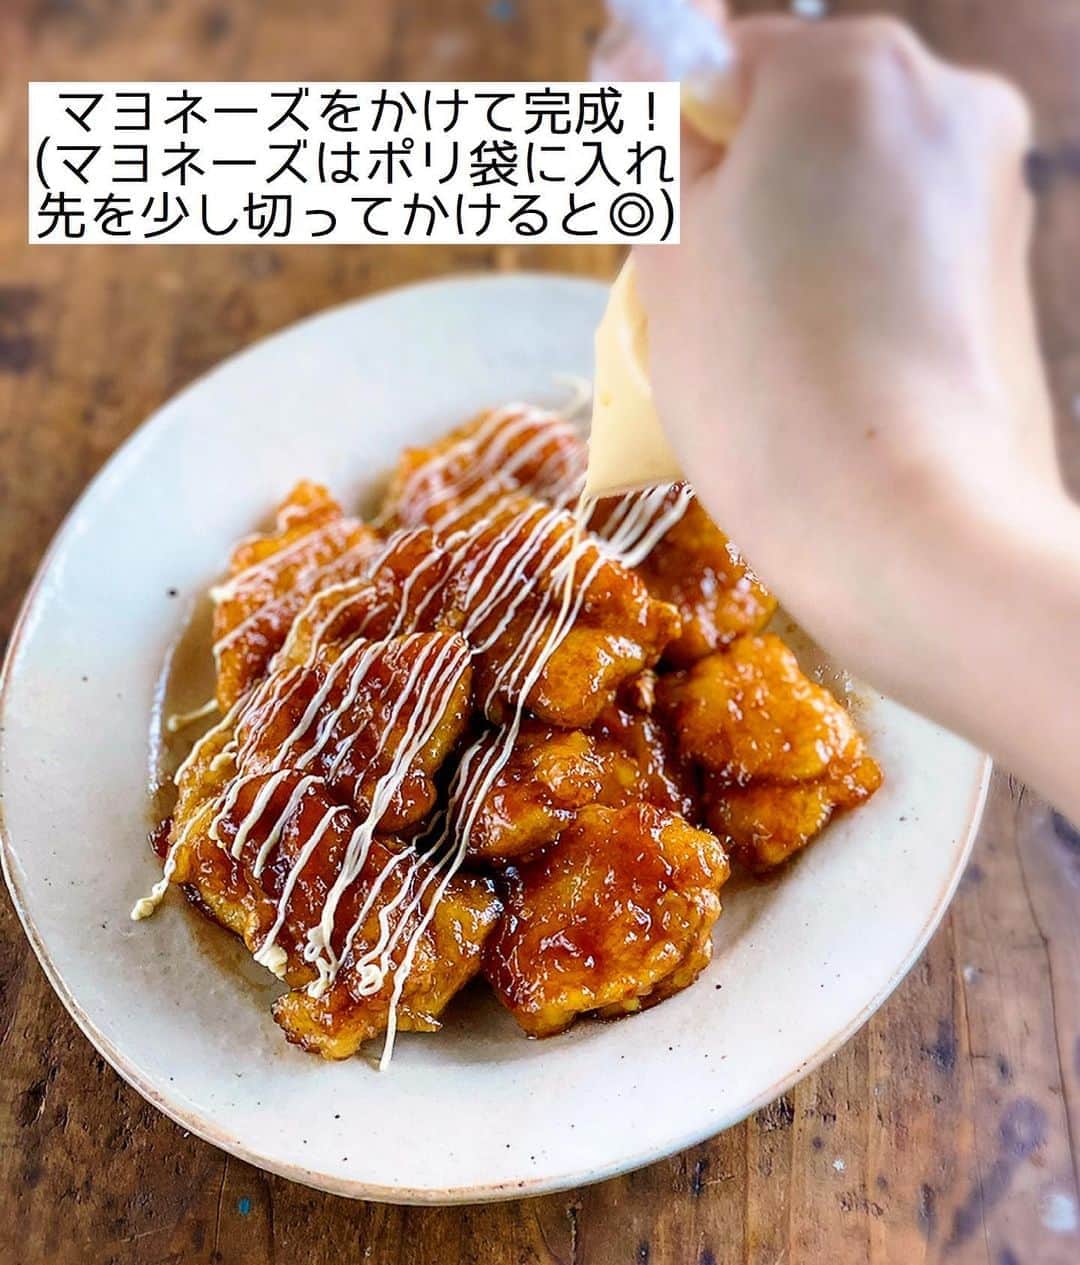 Mizuki【料理ブロガー・簡単レシピ】さんのインスタグラム写真 - (Mizuki【料理ブロガー・簡単レシピ】Instagram)「・﻿ 【レシピ】ーーーーーーーーーー﻿ ♡鶏むね肉de甘酢マヨチキン♡﻿ ーーーーーーーーーーーーーーー﻿ ﻿ ﻿ ﻿ おはようございます(*^^*)﻿ ﻿ 今日はコスパ抜群の鶏むね肉おかず！﻿ ［甘酢マヨチキン］のご紹介です♡﻿ 淡白な鶏むね肉に﻿ 濃厚な甘酢マヨが相性抜群！﻿ テリッテリのビジュアルがまた﻿ 食欲をそそりますよ〜(*´艸`)﻿ ﻿ フライパンひとつでできるので﻿ よかったらお試し下さいね(*^^*)﻿ ﻿ ﻿ ﻿ ーーーーーーーーーーーーーーーーーーーー﻿ 【2人分】﻿ 鶏むね肉...1枚(250g)﻿ ●塩こしょう...少々﻿ ●酒...小2﻿ 片栗粉...適量﻿ サラダ油...大1﻿ ☆醤油・酒...各大1.5﻿ ☆砂糖・酢...各大1﻿ マヨネーズ・万能ねぎ...各適量﻿ ﻿ 1.鶏肉は全体をフォークで刺して1cm厚さの削ぎ切りにし、●を揉み込み片栗粉をまぶす。☆は合わせておく。﻿ 2.フライパンにサラダ油を中火で熱して鶏肉を焼く。焼き色が付いたら裏返してフタをし、弱めの中火で3分蒸し焼きにする。﻿ 3.☆を加えて煮からめ、器に盛ってマヨネーズとねぎをかける。﻿ ーーーーーーーーーーーーーーーーーーーー﻿ ﻿ ﻿ ﻿ 《ポイント》﻿ ♦︎鶏むね肉をフォークで刺すこと、下味を揉み込んで粉をまぶすことで、しっとり柔らかく仕上がります♩﻿ ♦︎千切りレタスやキャベツなどと盛り合わせてもよく合います♩﻿ ﻿ ﻿ ﻿ ﻿ ﻿ ﻿ ﻿ ＿＿＿＿＿＿＿＿＿＿＿＿＿＿＿＿＿＿＿﻿ 📕6刷重版しました📕﻿ 簡単・時短！ 毎日のごはんがラクになる﻿ ✨🦋 【 #Mizukiの今どき和食 】🦋✨﻿ ＿＿＿＿＿＿＿＿＿＿＿＿＿＿＿＿＿＿＿﻿ なるべく少ない材料で﻿ 手間も時間も省きながら﻿ 簡単にできるおいしい和食レシピ♩﻿ 簡単に失敗なくマスターできる一冊で﻿ もっと気軽に、カジュアルに﻿ 和食を楽しんで下さいね(*^^*)﻿ ＿＿＿＿＿＿＿＿＿＿＿＿＿＿＿＿＿＿＿﻿ ﻿ ﻿ ﻿ ＿＿＿＿＿＿＿＿＿＿＿＿＿＿＿＿＿＿＿﻿ 🎀6刷重版しました🎀﻿ 混ぜて焼くだけ。はじめてでも失敗しない！﻿ 【#ホットケーキミックスのお菓子 】﻿ ﻿ 一冊まるっとホケミスイーツ♩﻿ 普段のおやつから﻿ 特別な日にも使えるレシピを﻿ この一冊に詰め込みました(*^^*)﻿ ホットケーキミックスを使えば﻿ 簡単に本格的なお菓子が作れますよ♡﻿ ＿＿＿＿＿＿＿＿＿＿＿＿＿＿＿＿＿﻿ ﻿ ﻿ ﻿ ﻿ ￣￣￣￣￣￣￣￣￣￣￣￣￣￣￣￣￣￣﻿ レシピを作って下さった際や﻿ レシピ本についてのご投稿には﻿ タグ付け( @mizuki_31cafe )して﻿ お知らせいただけると嬉しいです😊💕﻿ ＿＿＿＿＿＿＿＿＿＿＿＿＿＿＿＿＿＿﻿ ﻿ ﻿ ﻿ ﻿ ﻿ #鶏むね肉#むね肉#甘酢#マヨネーズ#コスパ#Mizuki#簡単レシピ#時短レシピ#節約レシピ#料理#レシピ#フーディーテーブル#マカロニメイト#おうちごはん#デリスタグラマー#料理好きな人と繋がりたい#食べ物#料理記録#おうちごはんlover#写真好きな人と繋がりたい#foodpic#cooking#recipe#lin_stagrammer#foodporn#yummy#甘酢マヨチキンm」8月11日 7時10分 - mizuki_31cafe